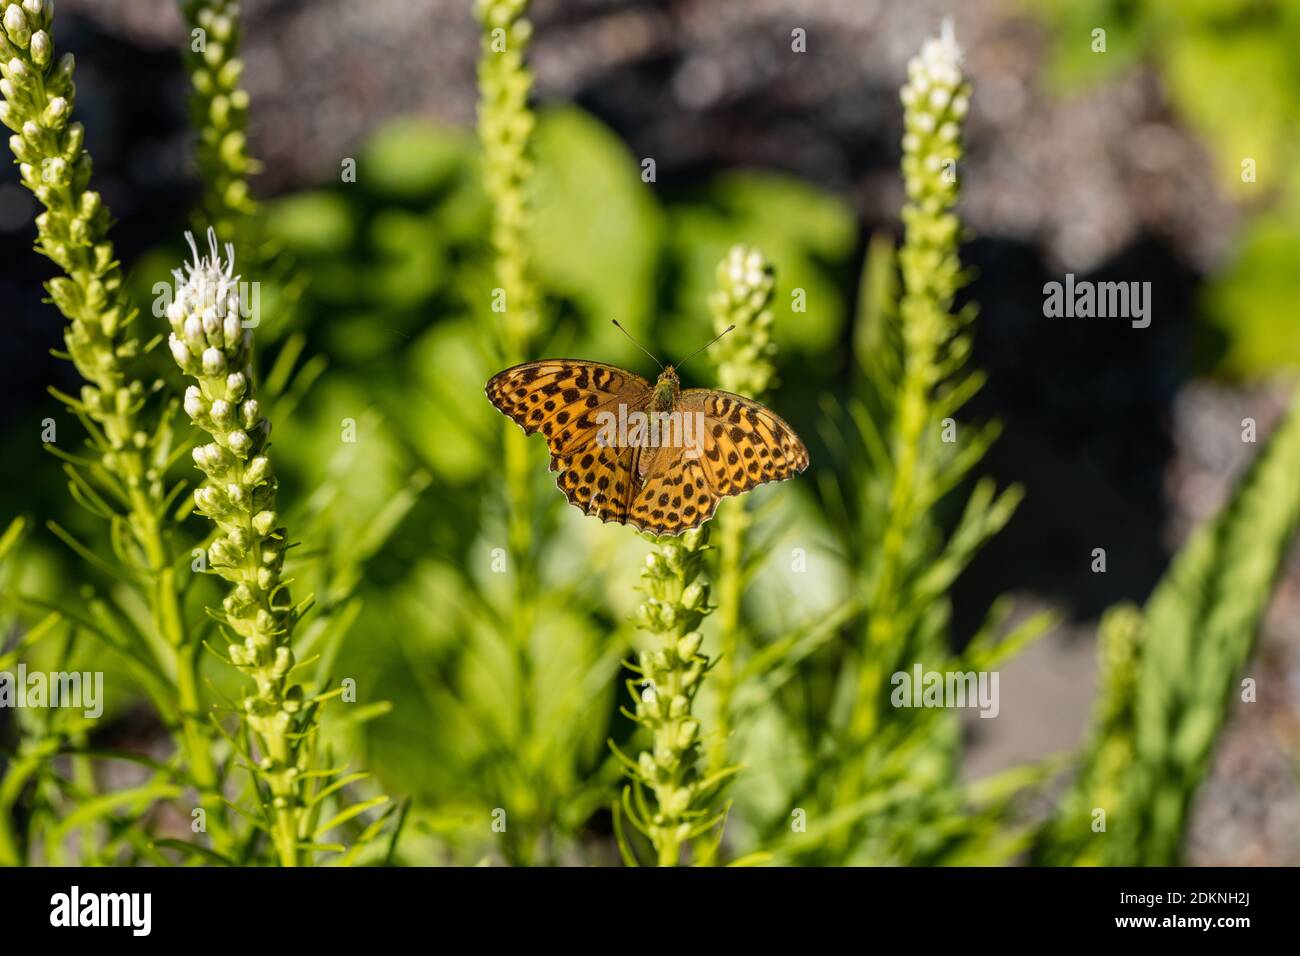 'Alba' Blazing Star Plant, Rosenstav (Liatris spicata) Stock Photo